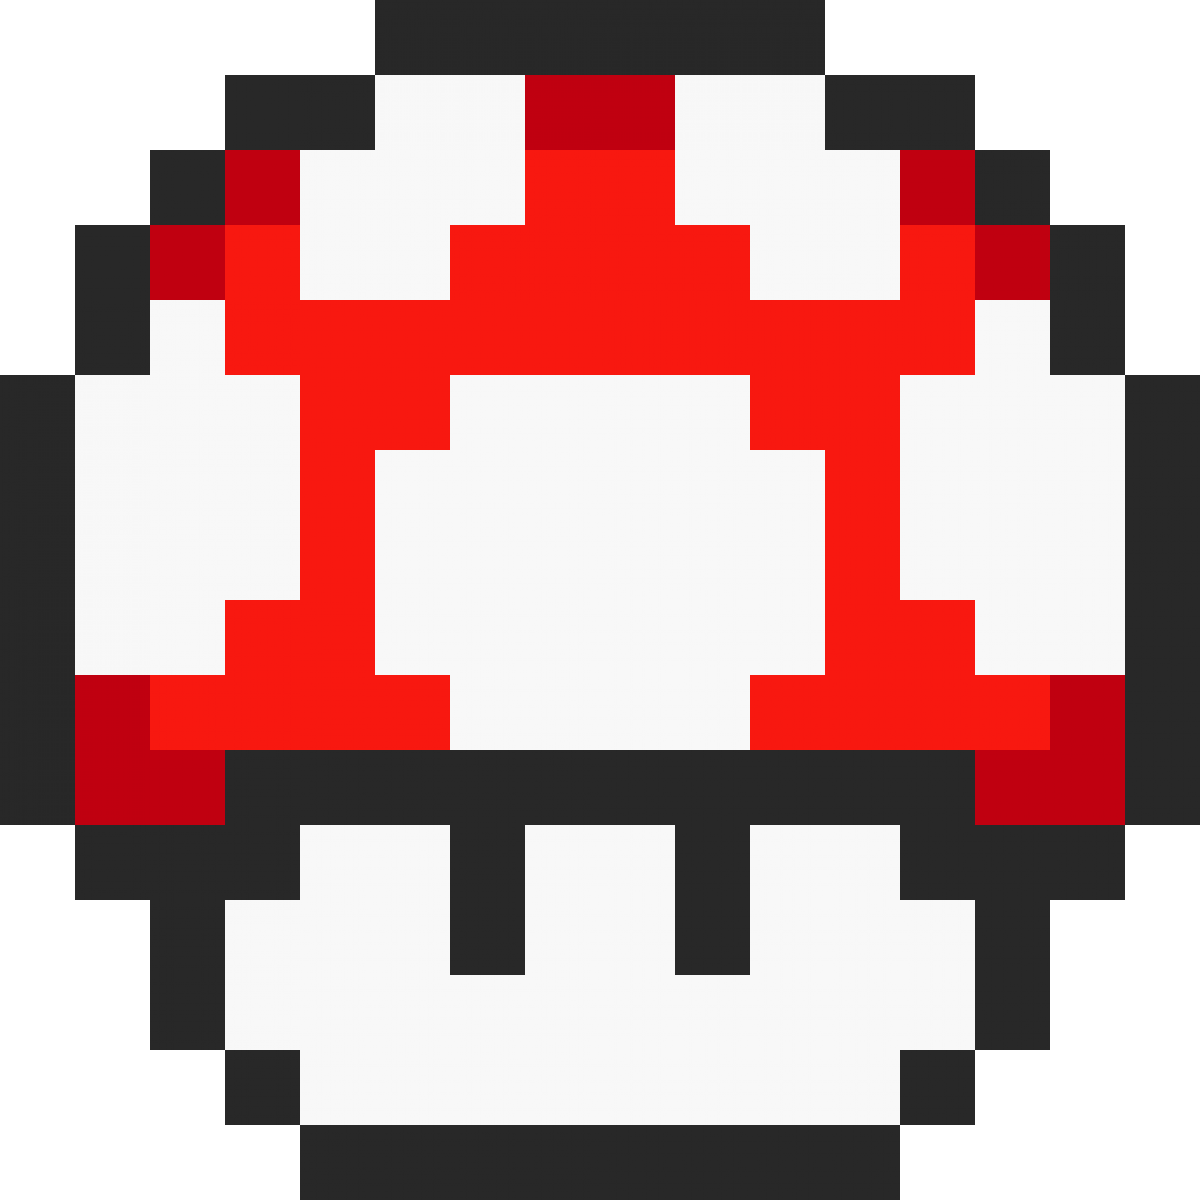 Марио 16 бит. Гриб из Марио пиксельный. 8 Битный Марио. 8ми битный Марио. Иконка 8 бита